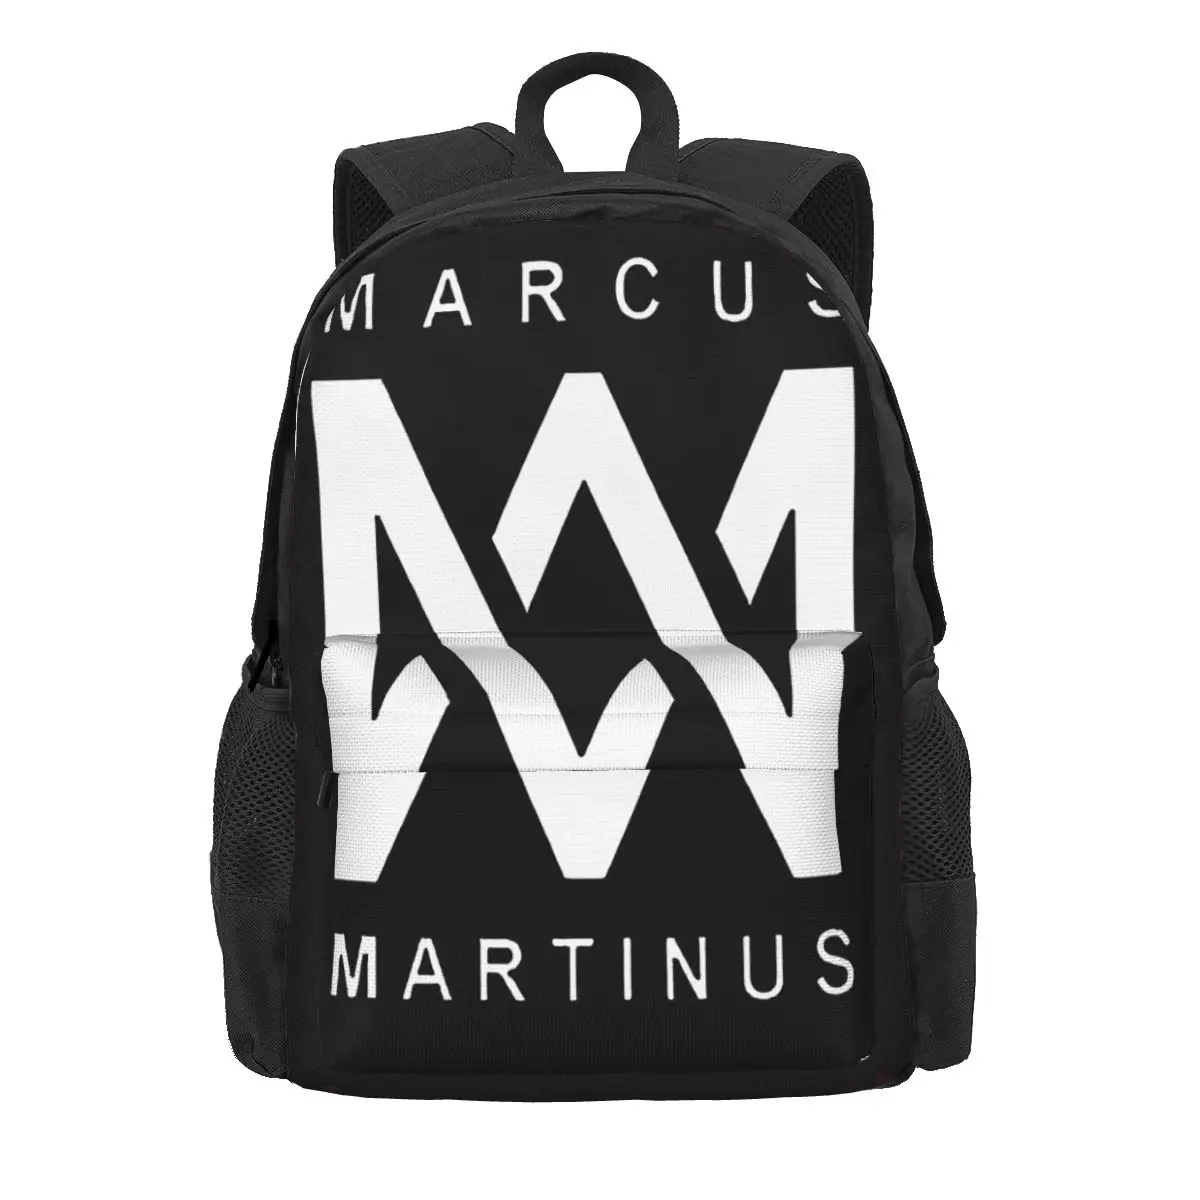 Печать Maircus Martinus 2023, Новый модный Прозрачный рюкзак, легкий рюкзак для мужчин и женщин, Студенческая дорожная сумка